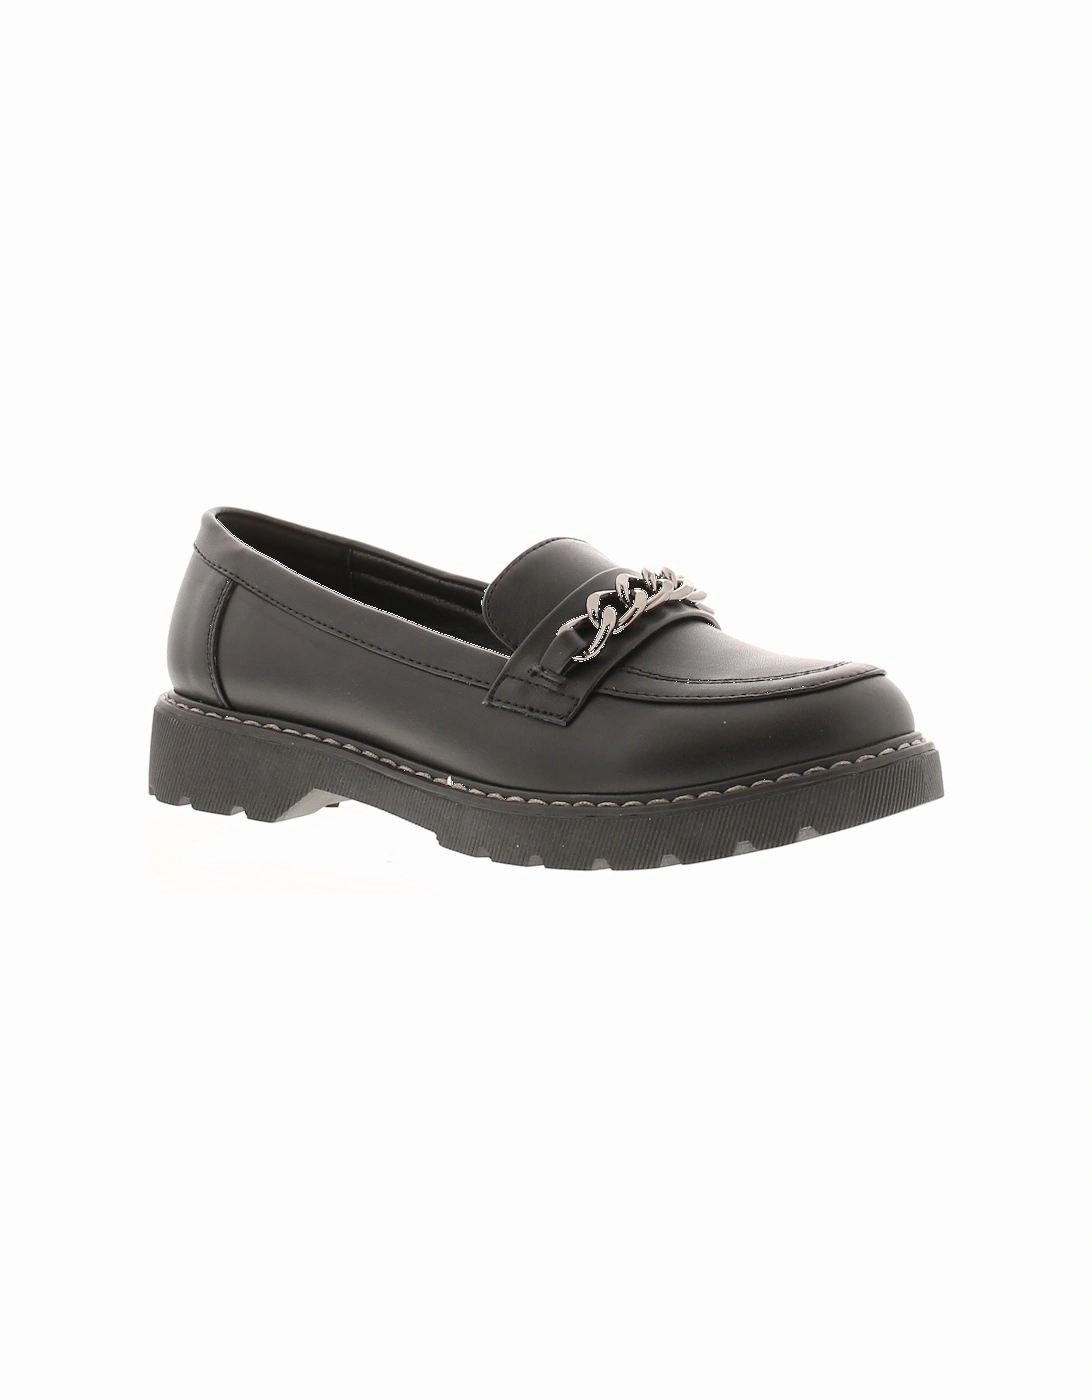 Womens Shoes School Work Kilburn Slip On black UK Size, 6 of 5